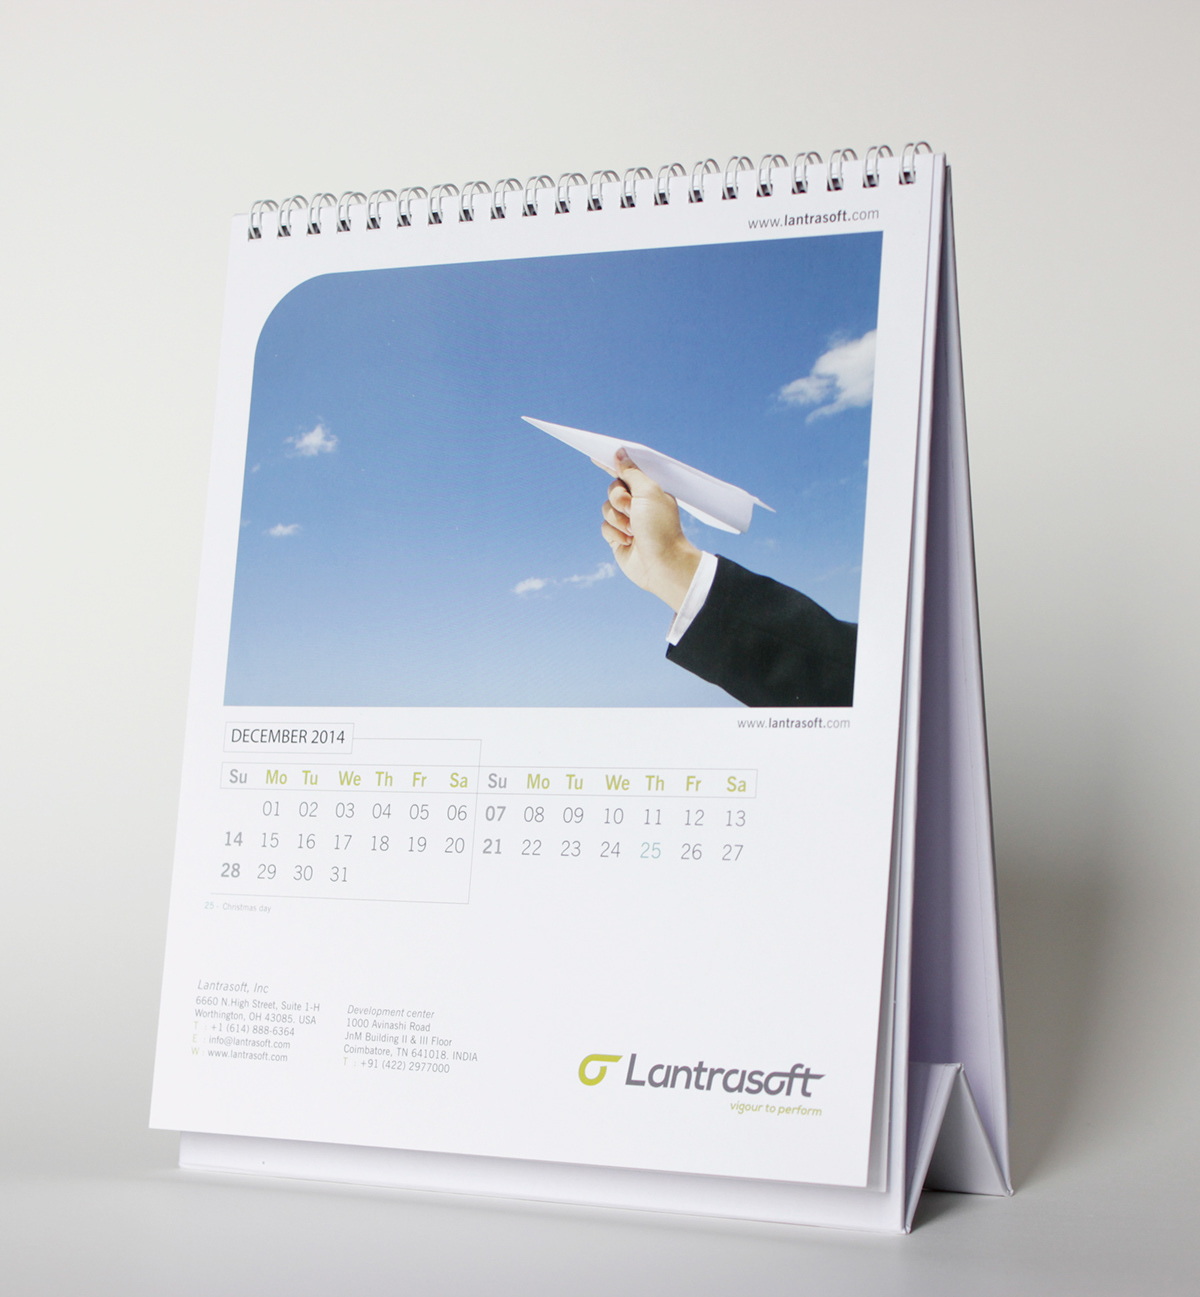 Calendar 2014 software